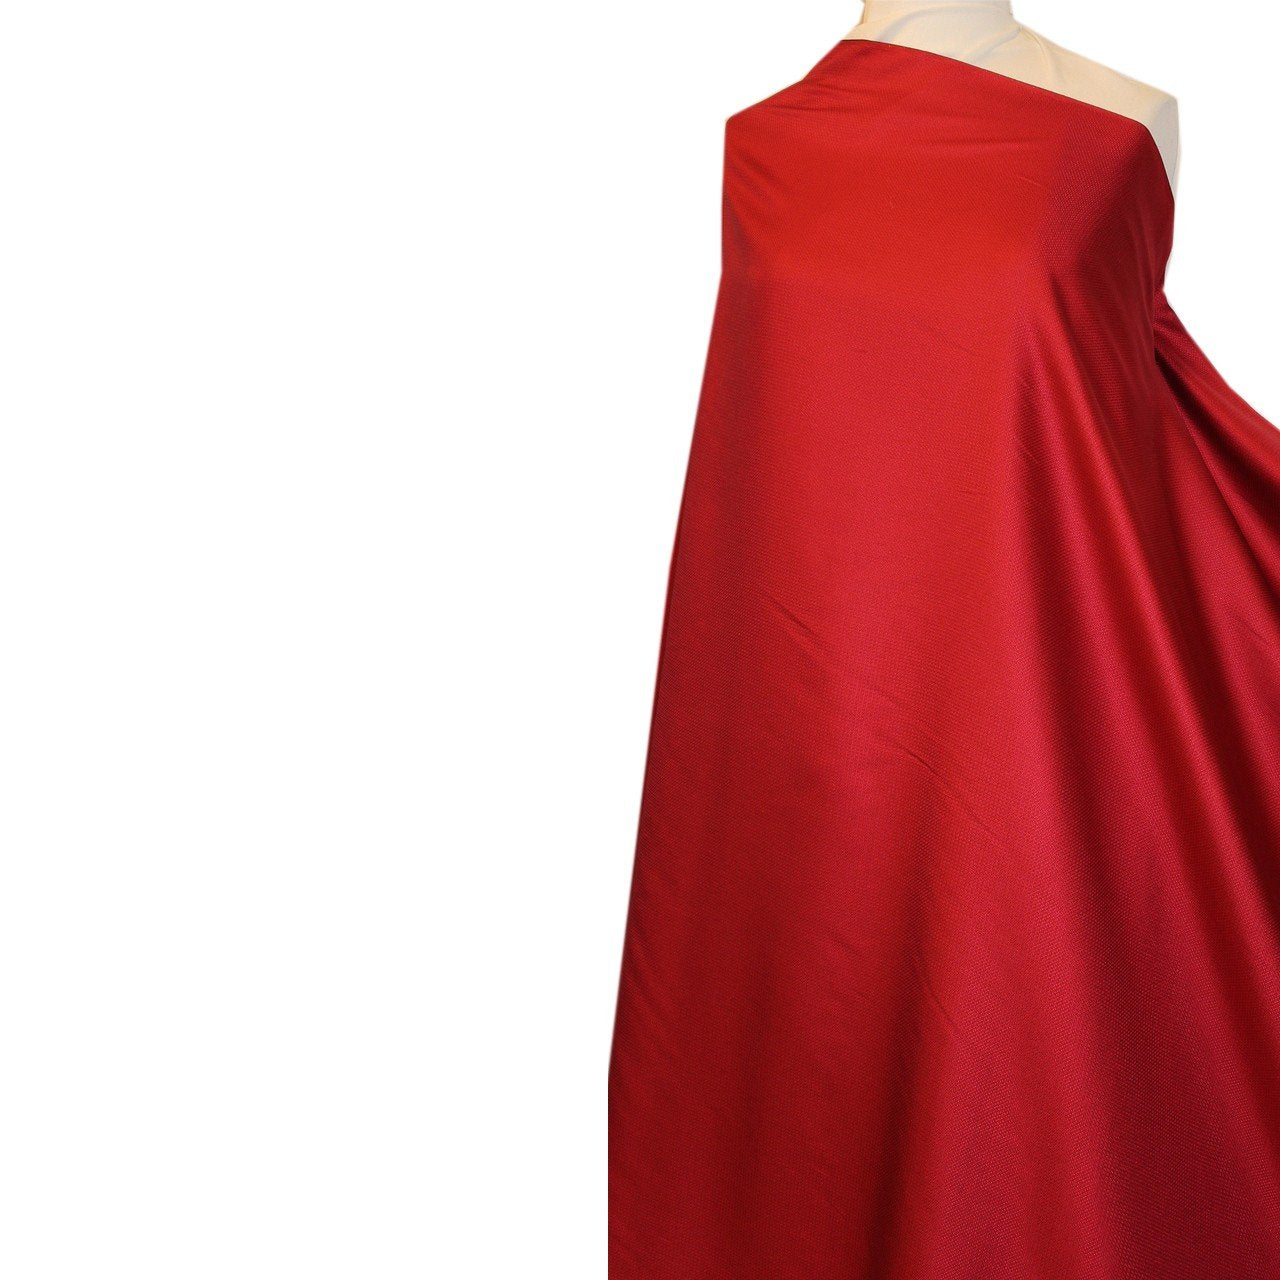 Weaving Brocade Satin Dress Fabrics Jacquard Satin Surface